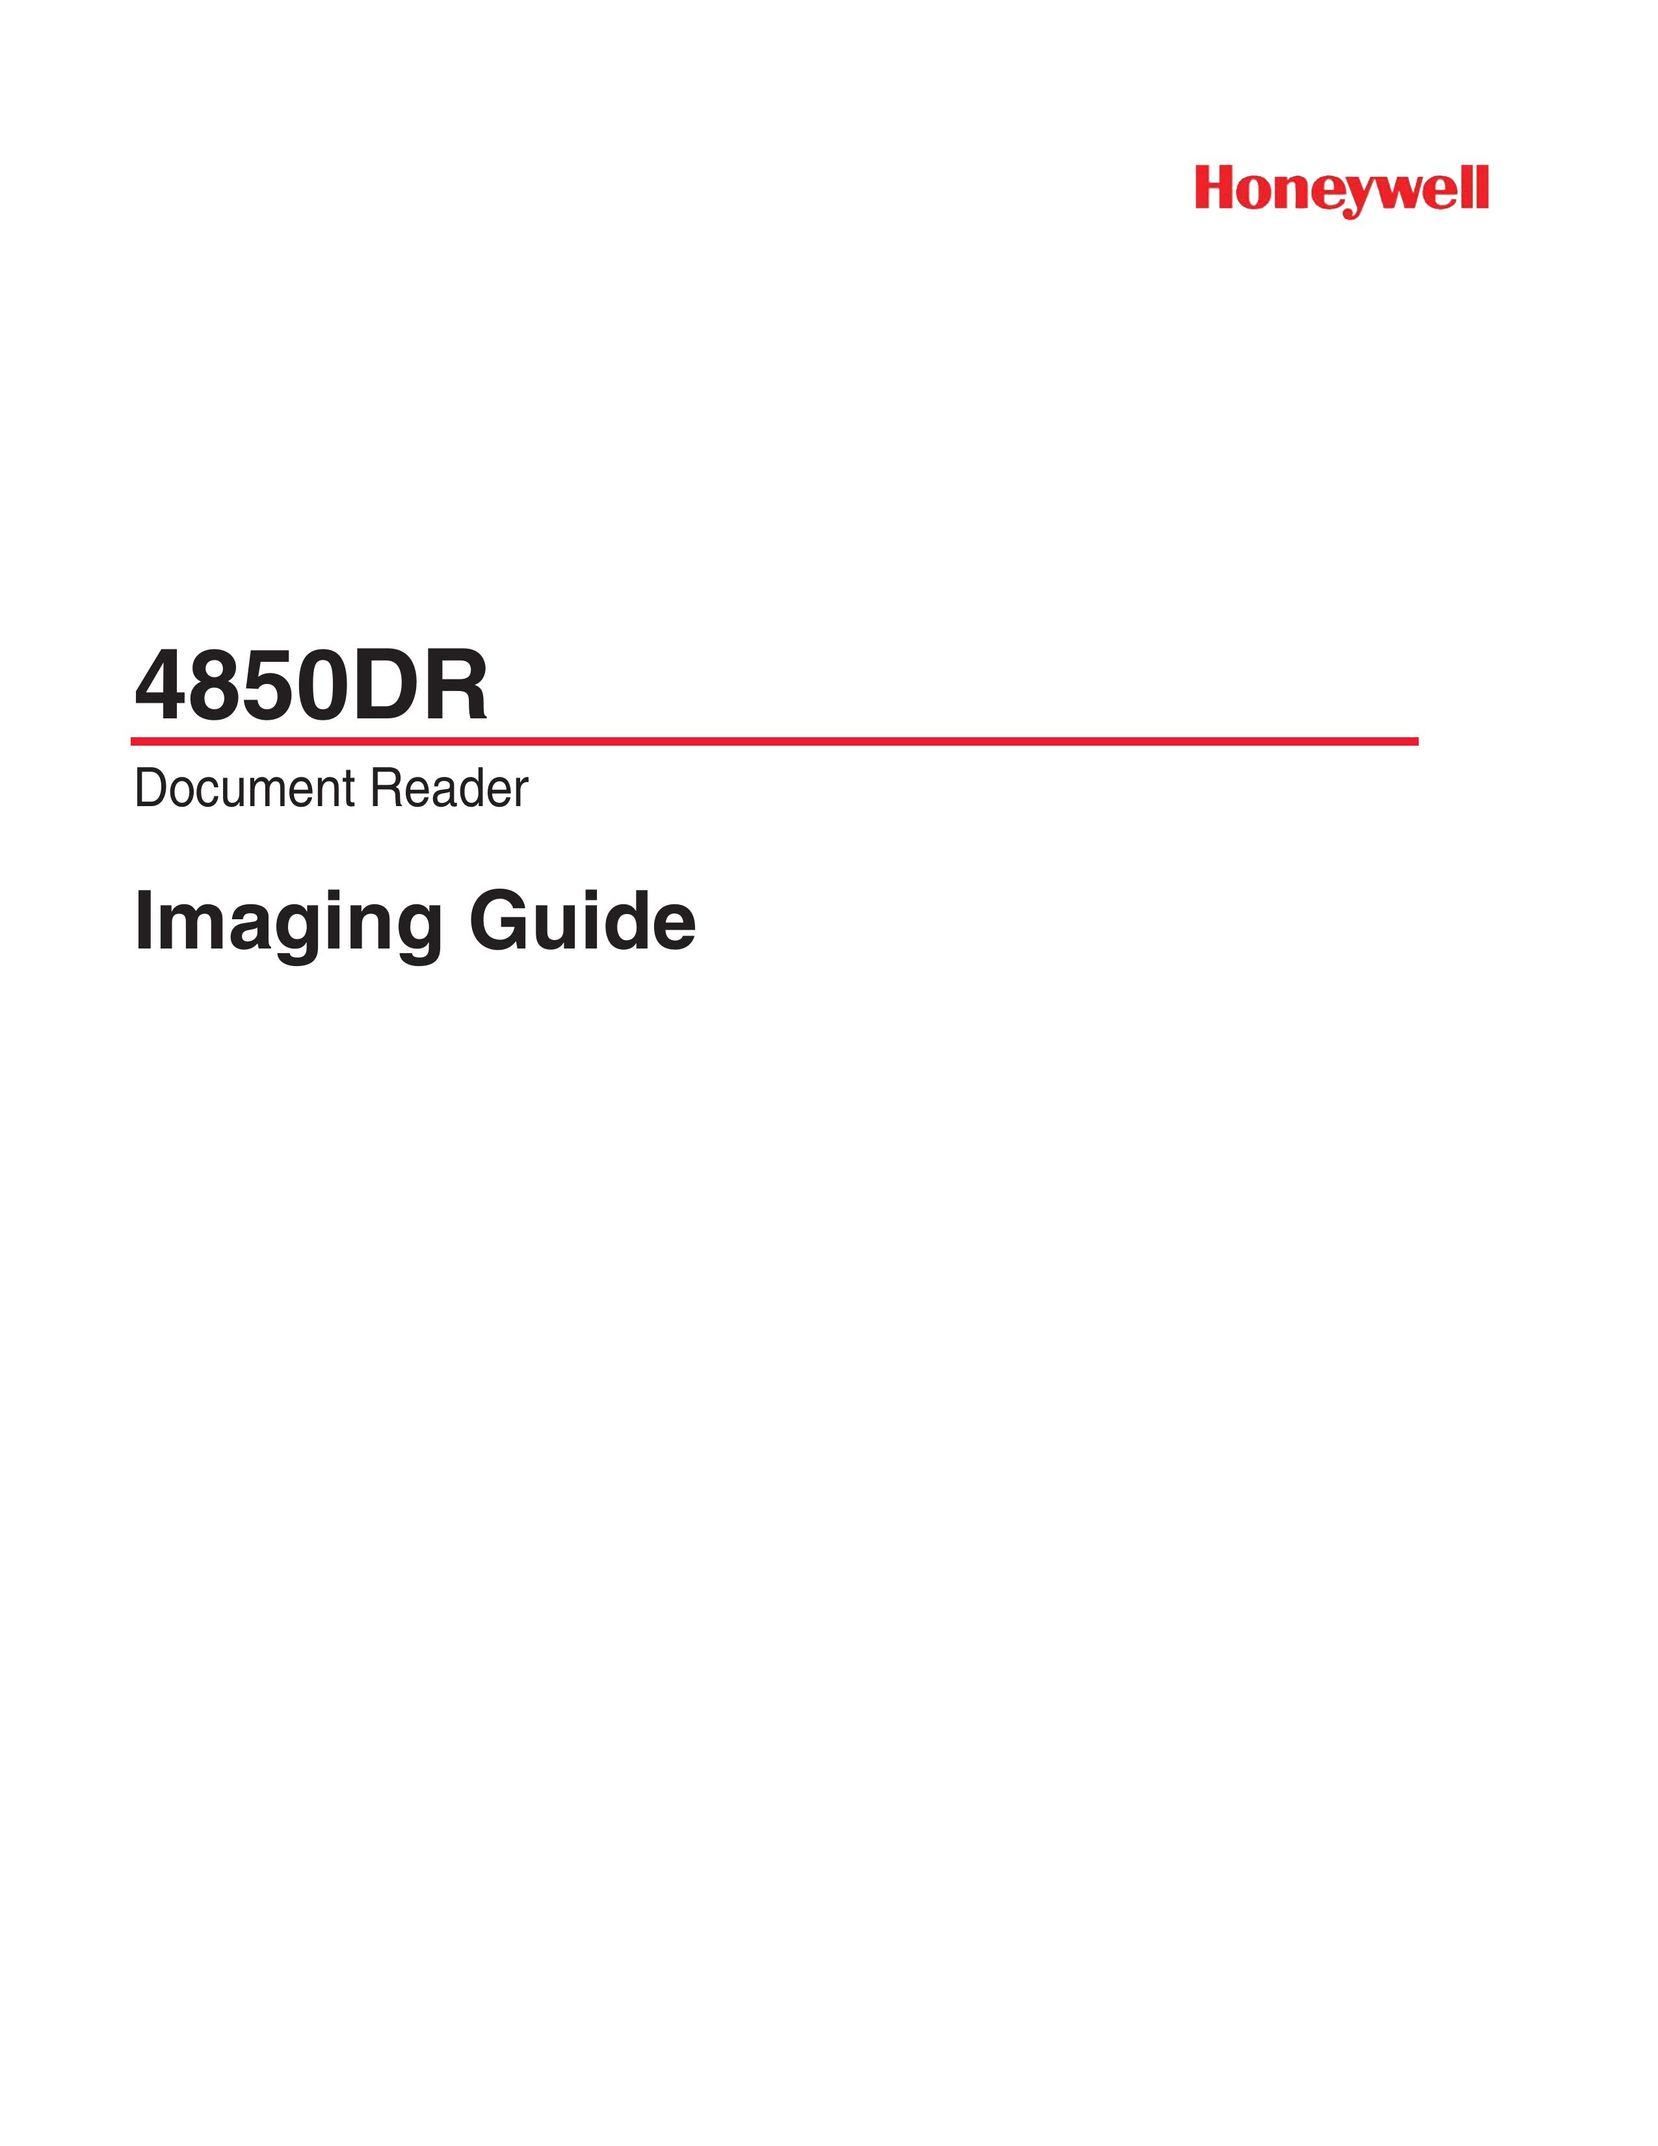 Honeywell 4850DR Scanner User Manual